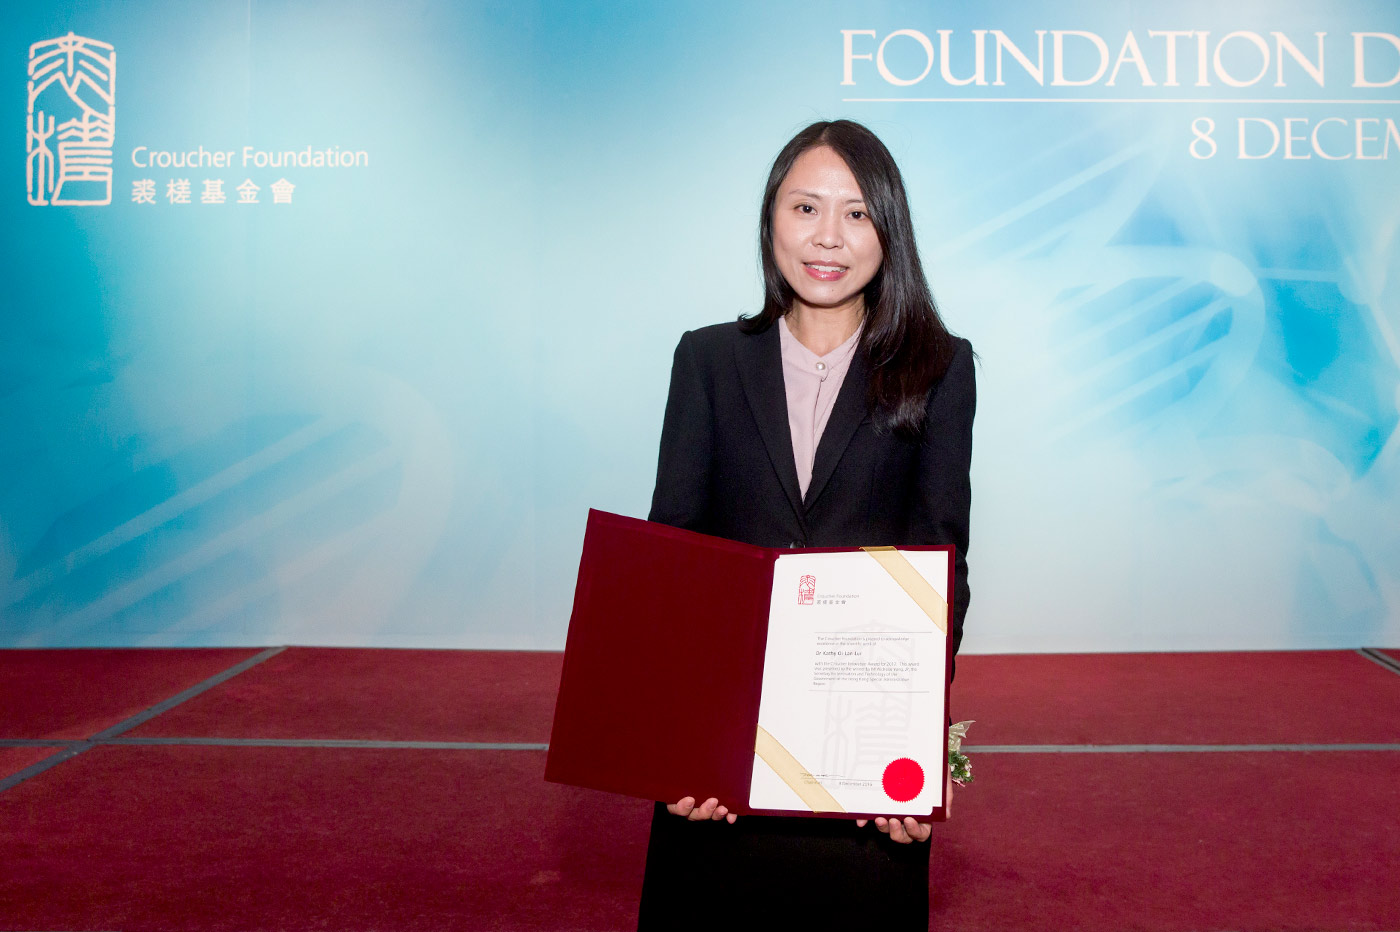 呂教授獲裘槎基金會授予2017年度「前瞻科研大獎」，以表揚她在國際科學界的卓越成就